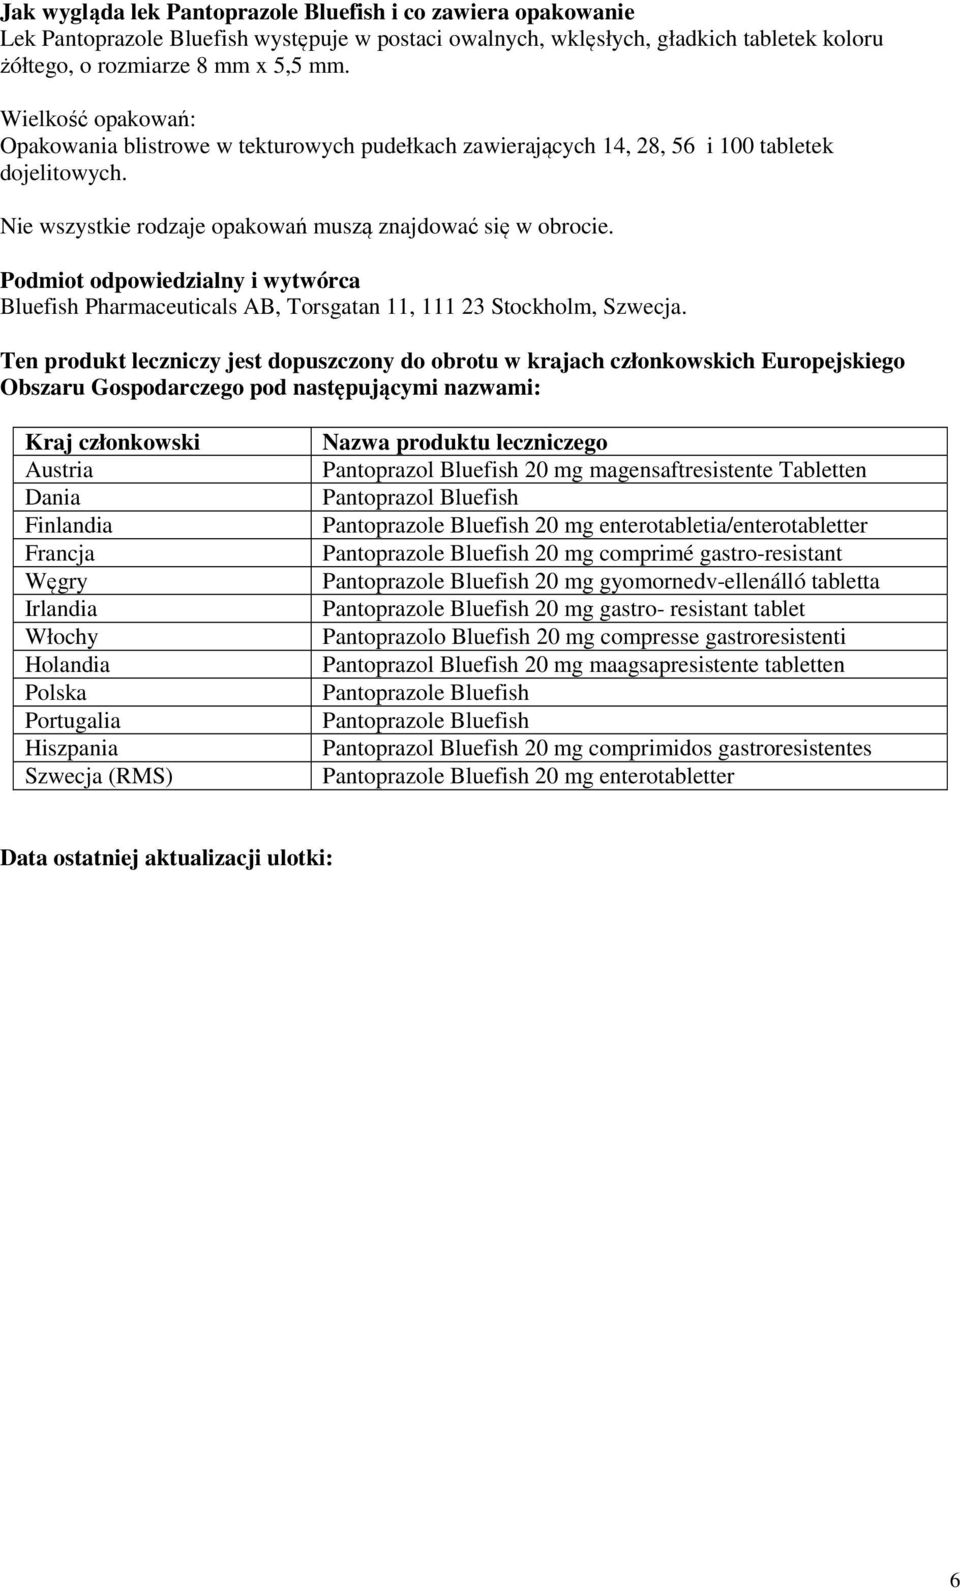 Podmiot odpowiedzialny i wytwórca Bluefish Pharmaceuticals AB, Torsgatan 11, 111 23 Stockholm, Szwecja.